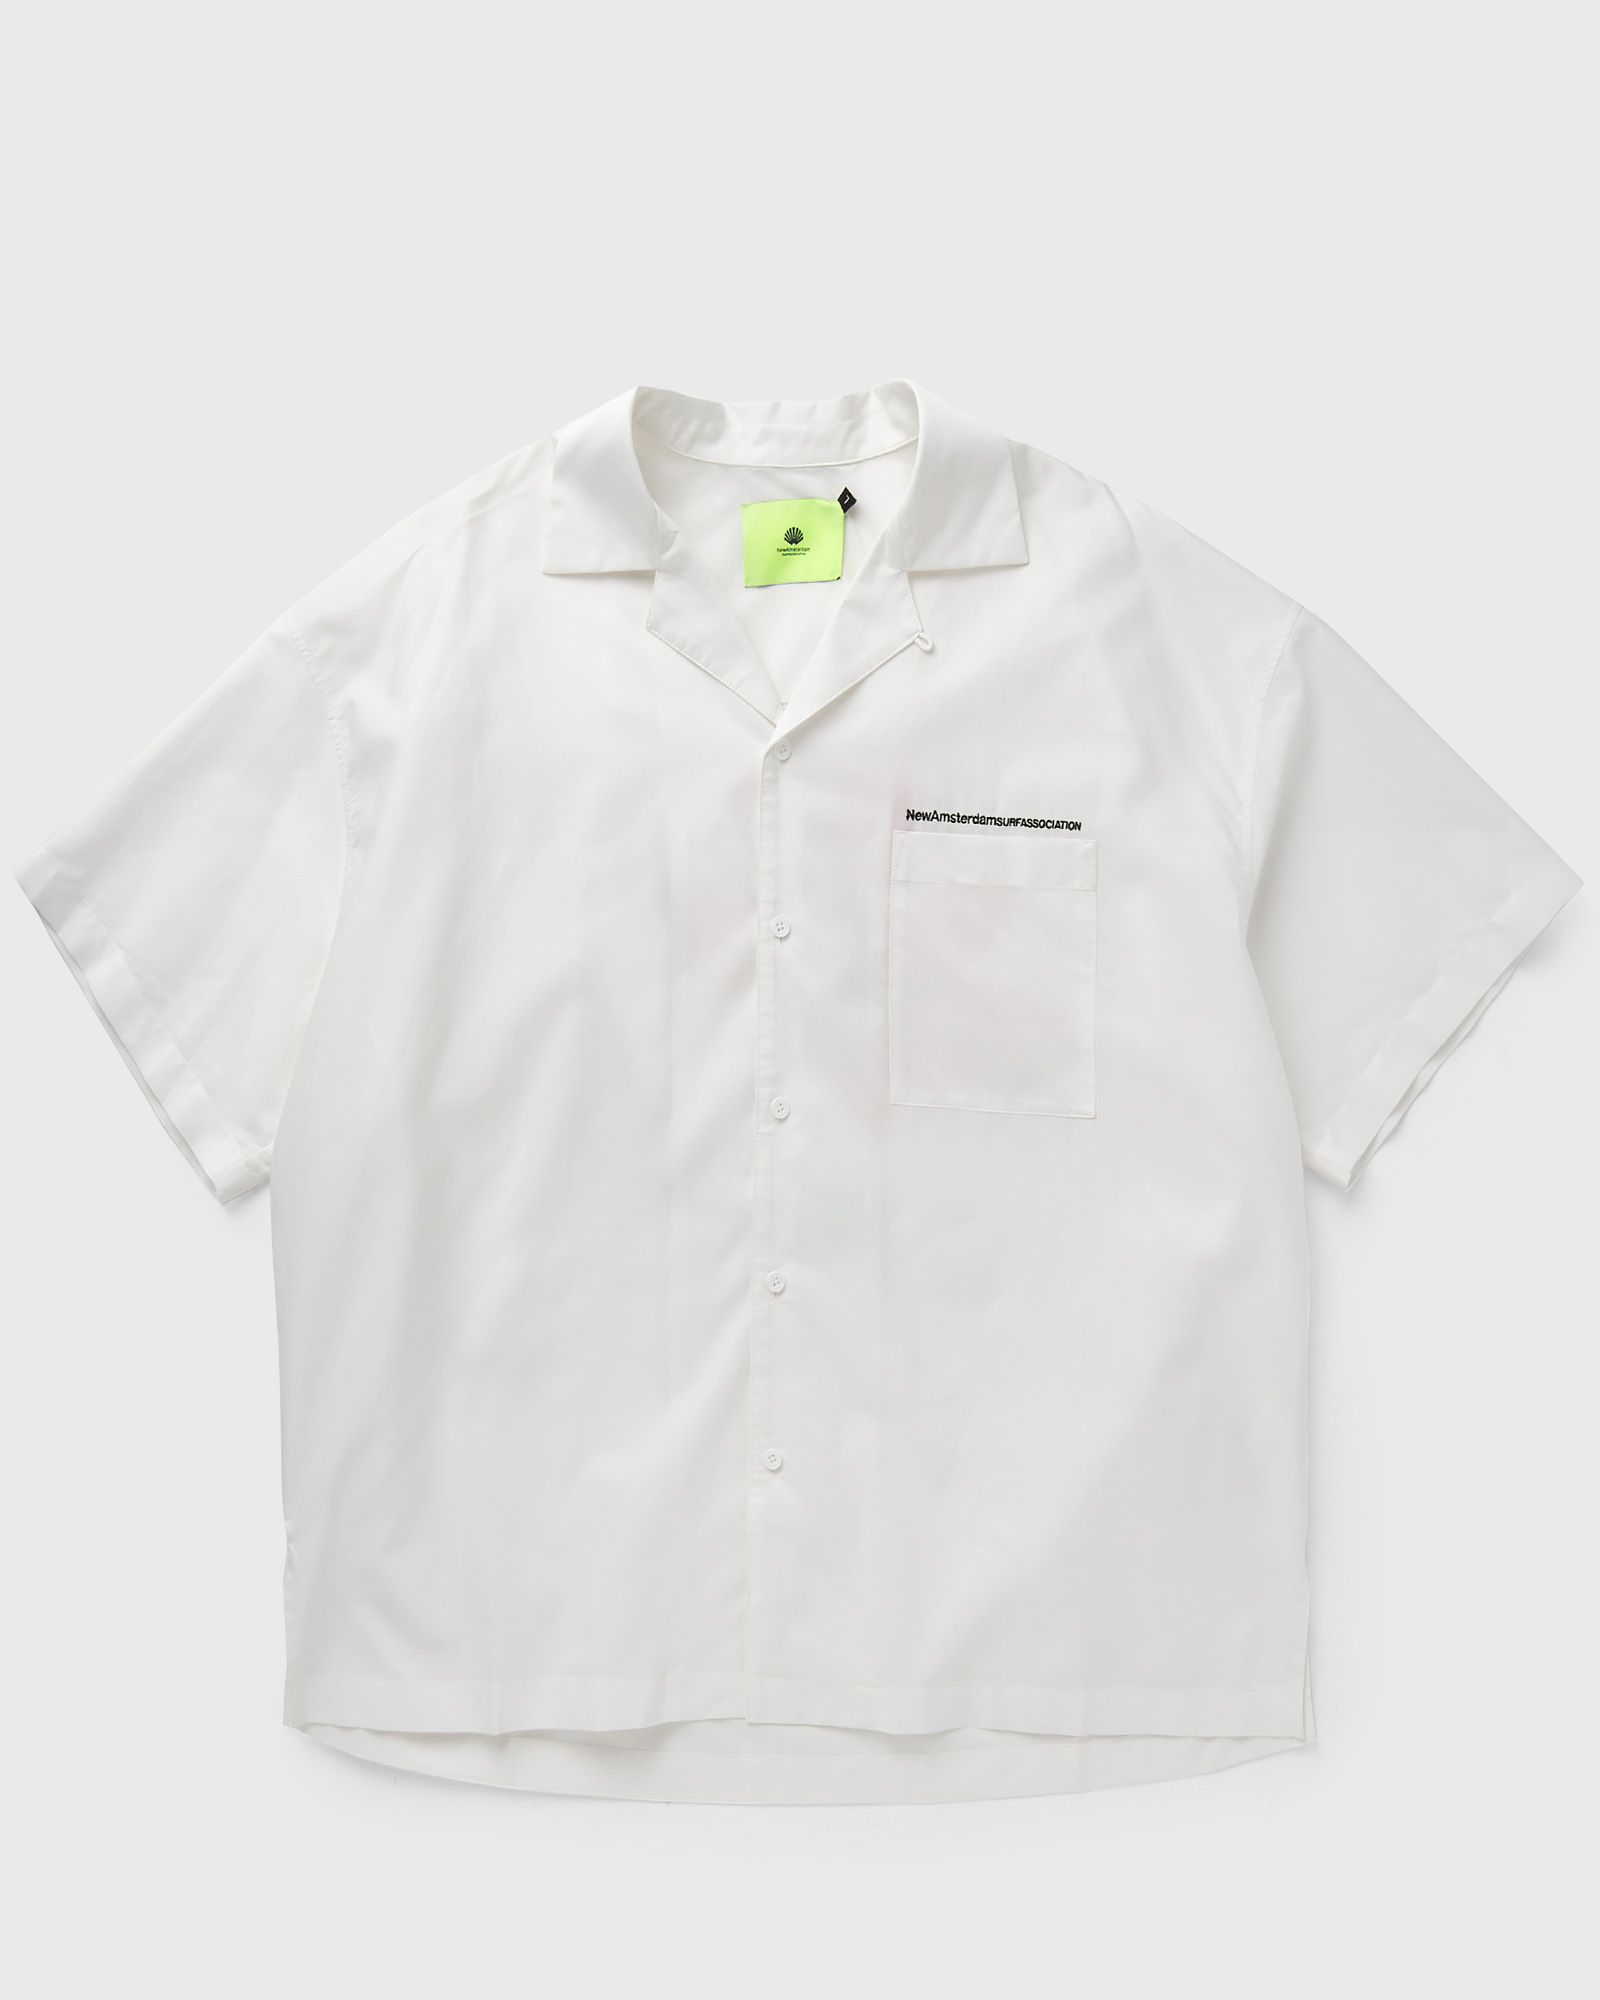 New Amsterdam - tulip wijk shirt men shortsleeves white in größe:m